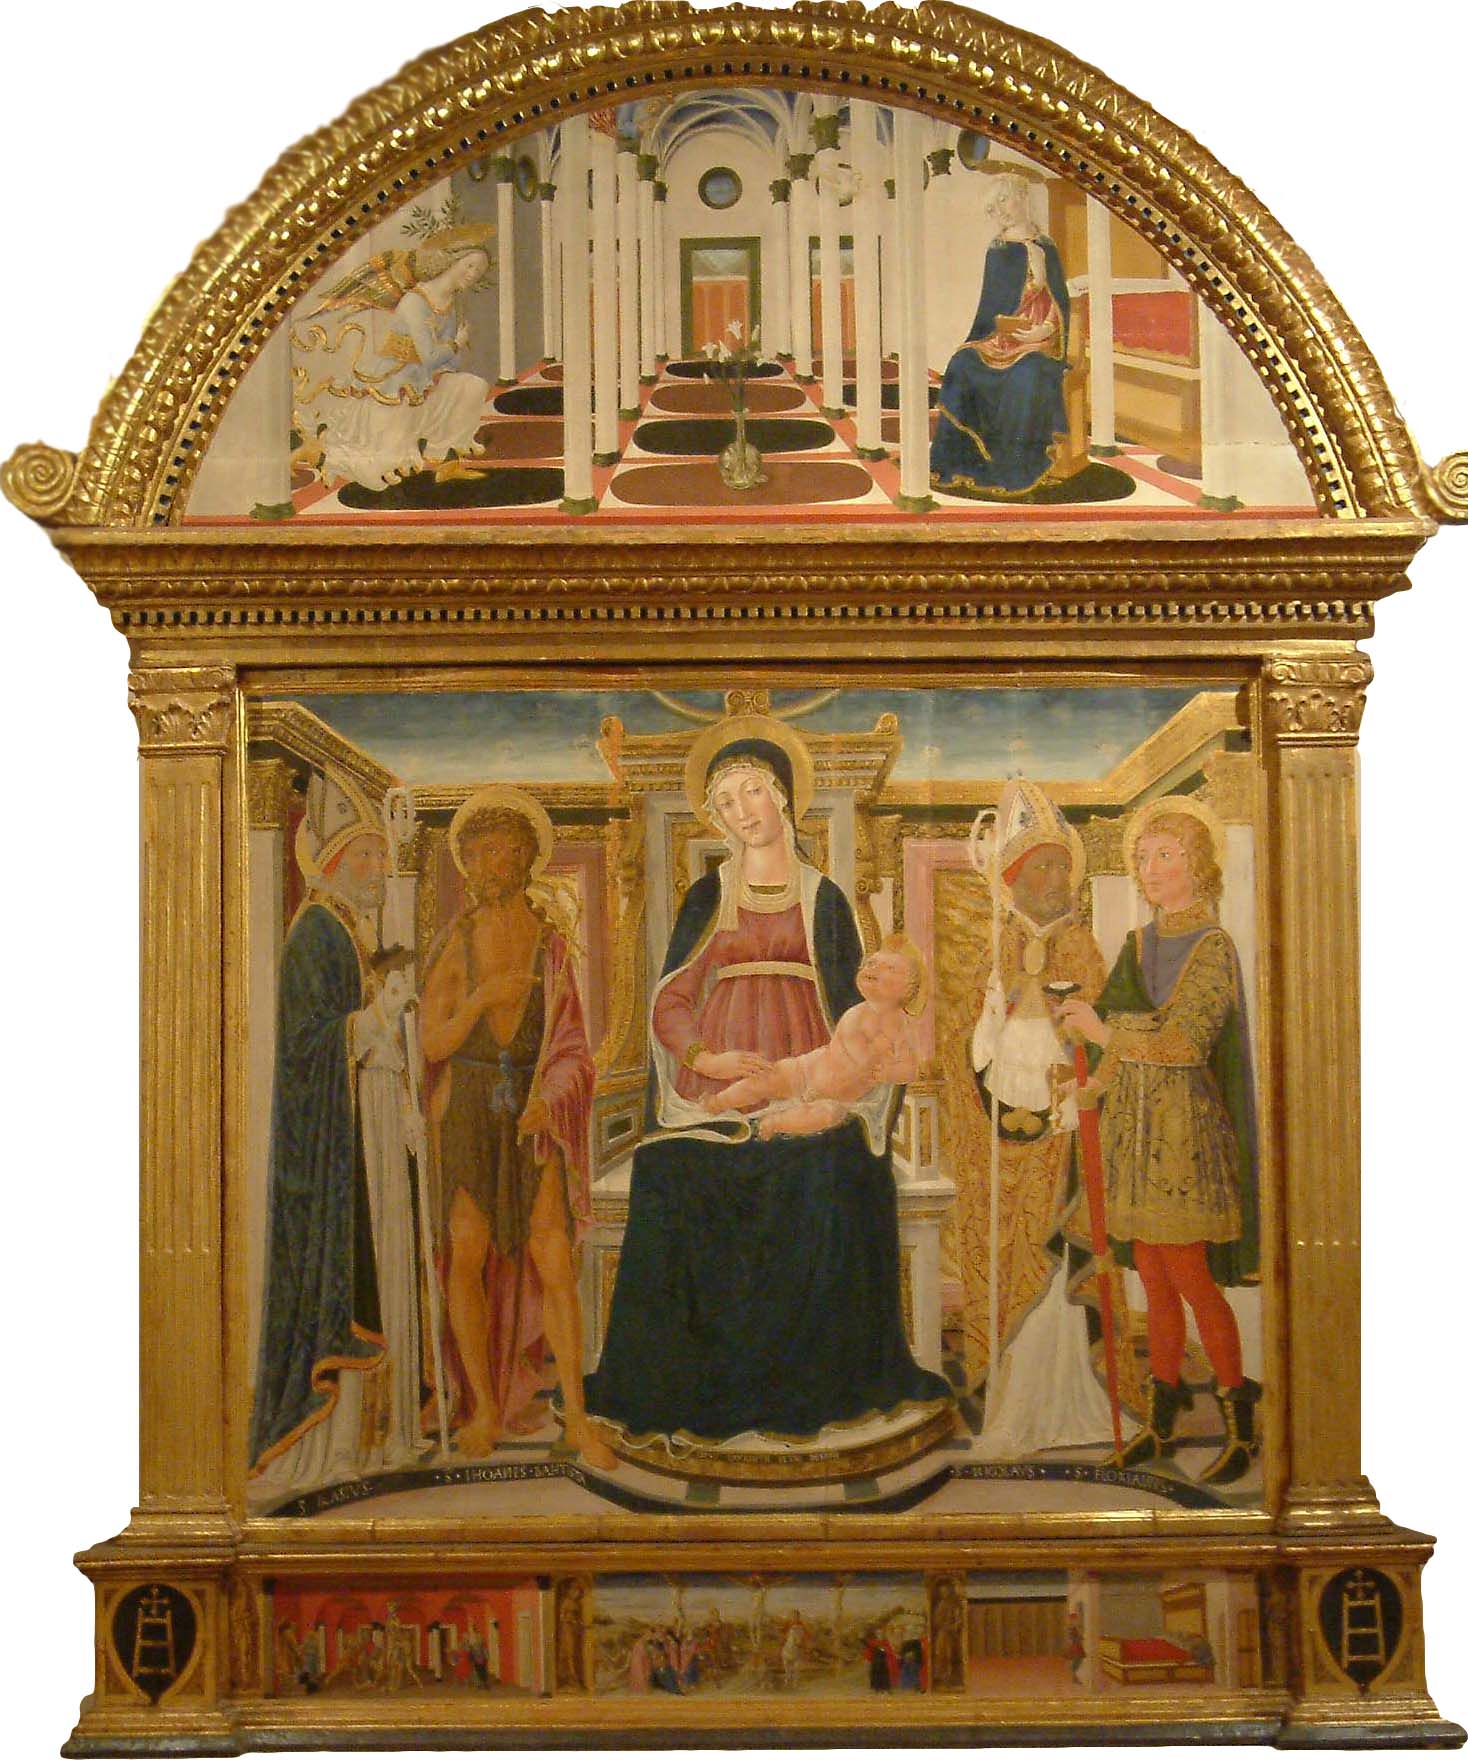 Vecchietta, Madonna col Bambino in trono tra i santi Biagio, Giovanni Battista, Nicola e Floriano (1460-1462; tempera su tavola; Pienza, Museo Diocesano - Borgia Palace)